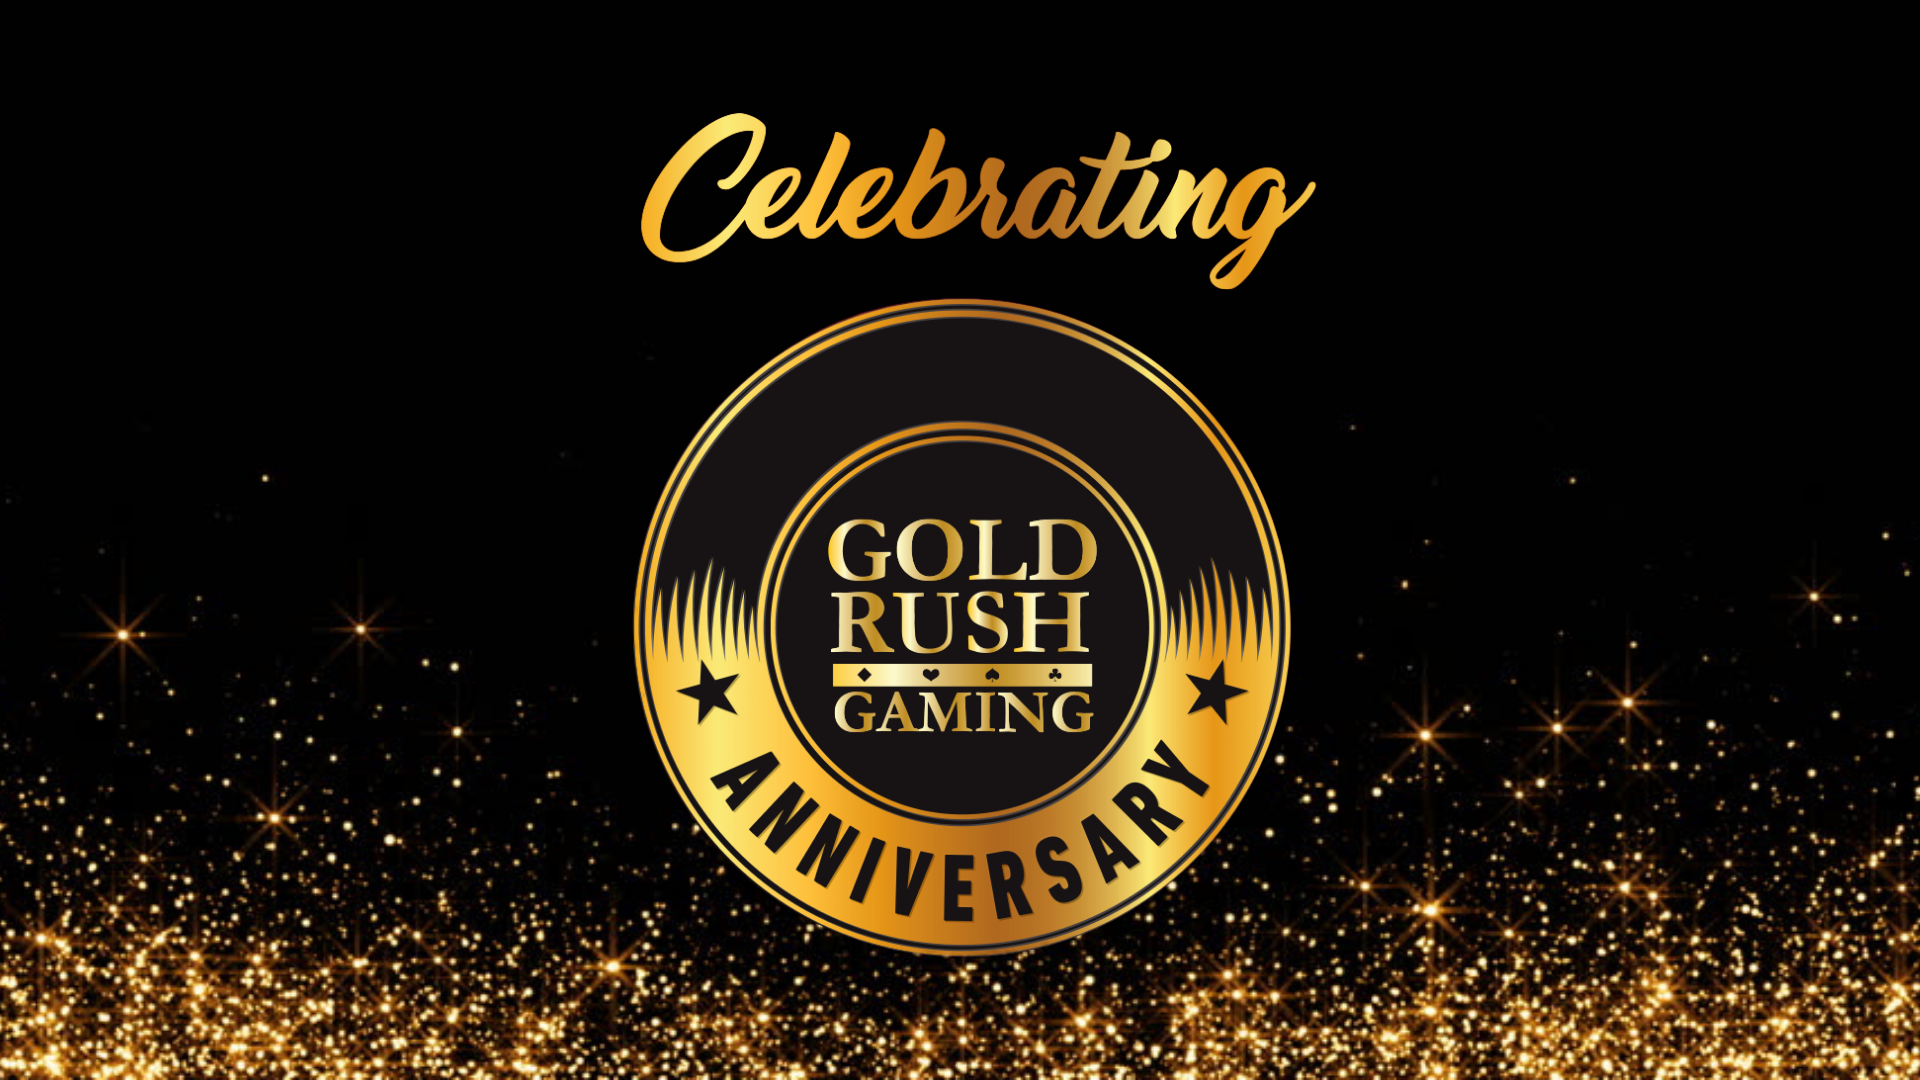 Gold Rush Gaming - Partner Anniversaries